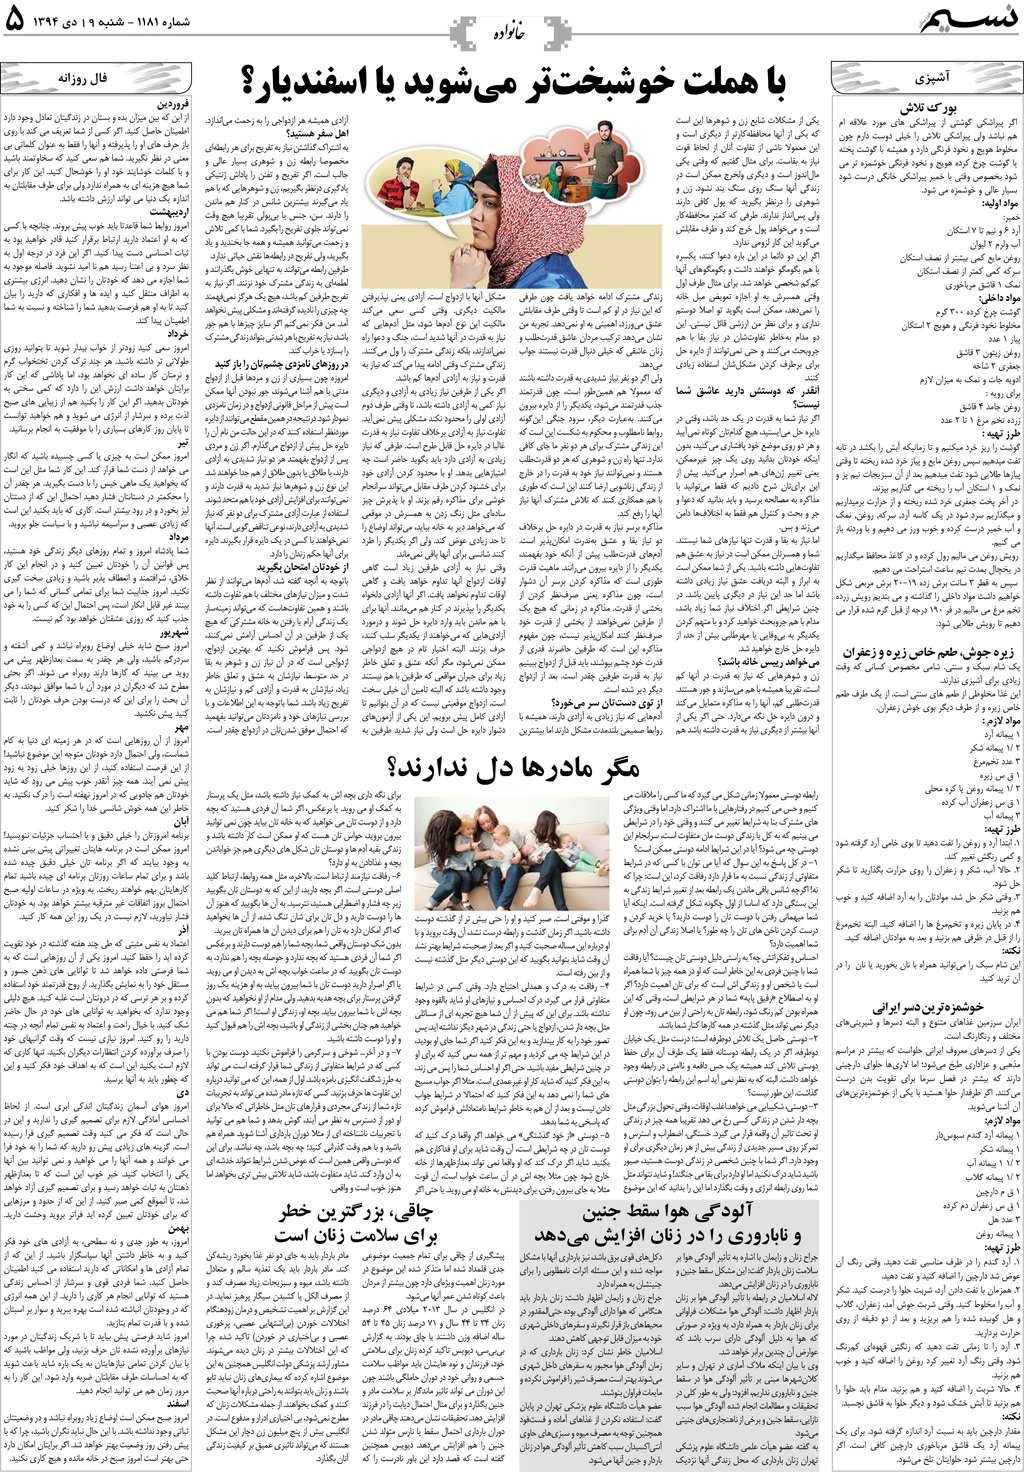 صفحه خانواده روزنامه نسیم شماره 1181